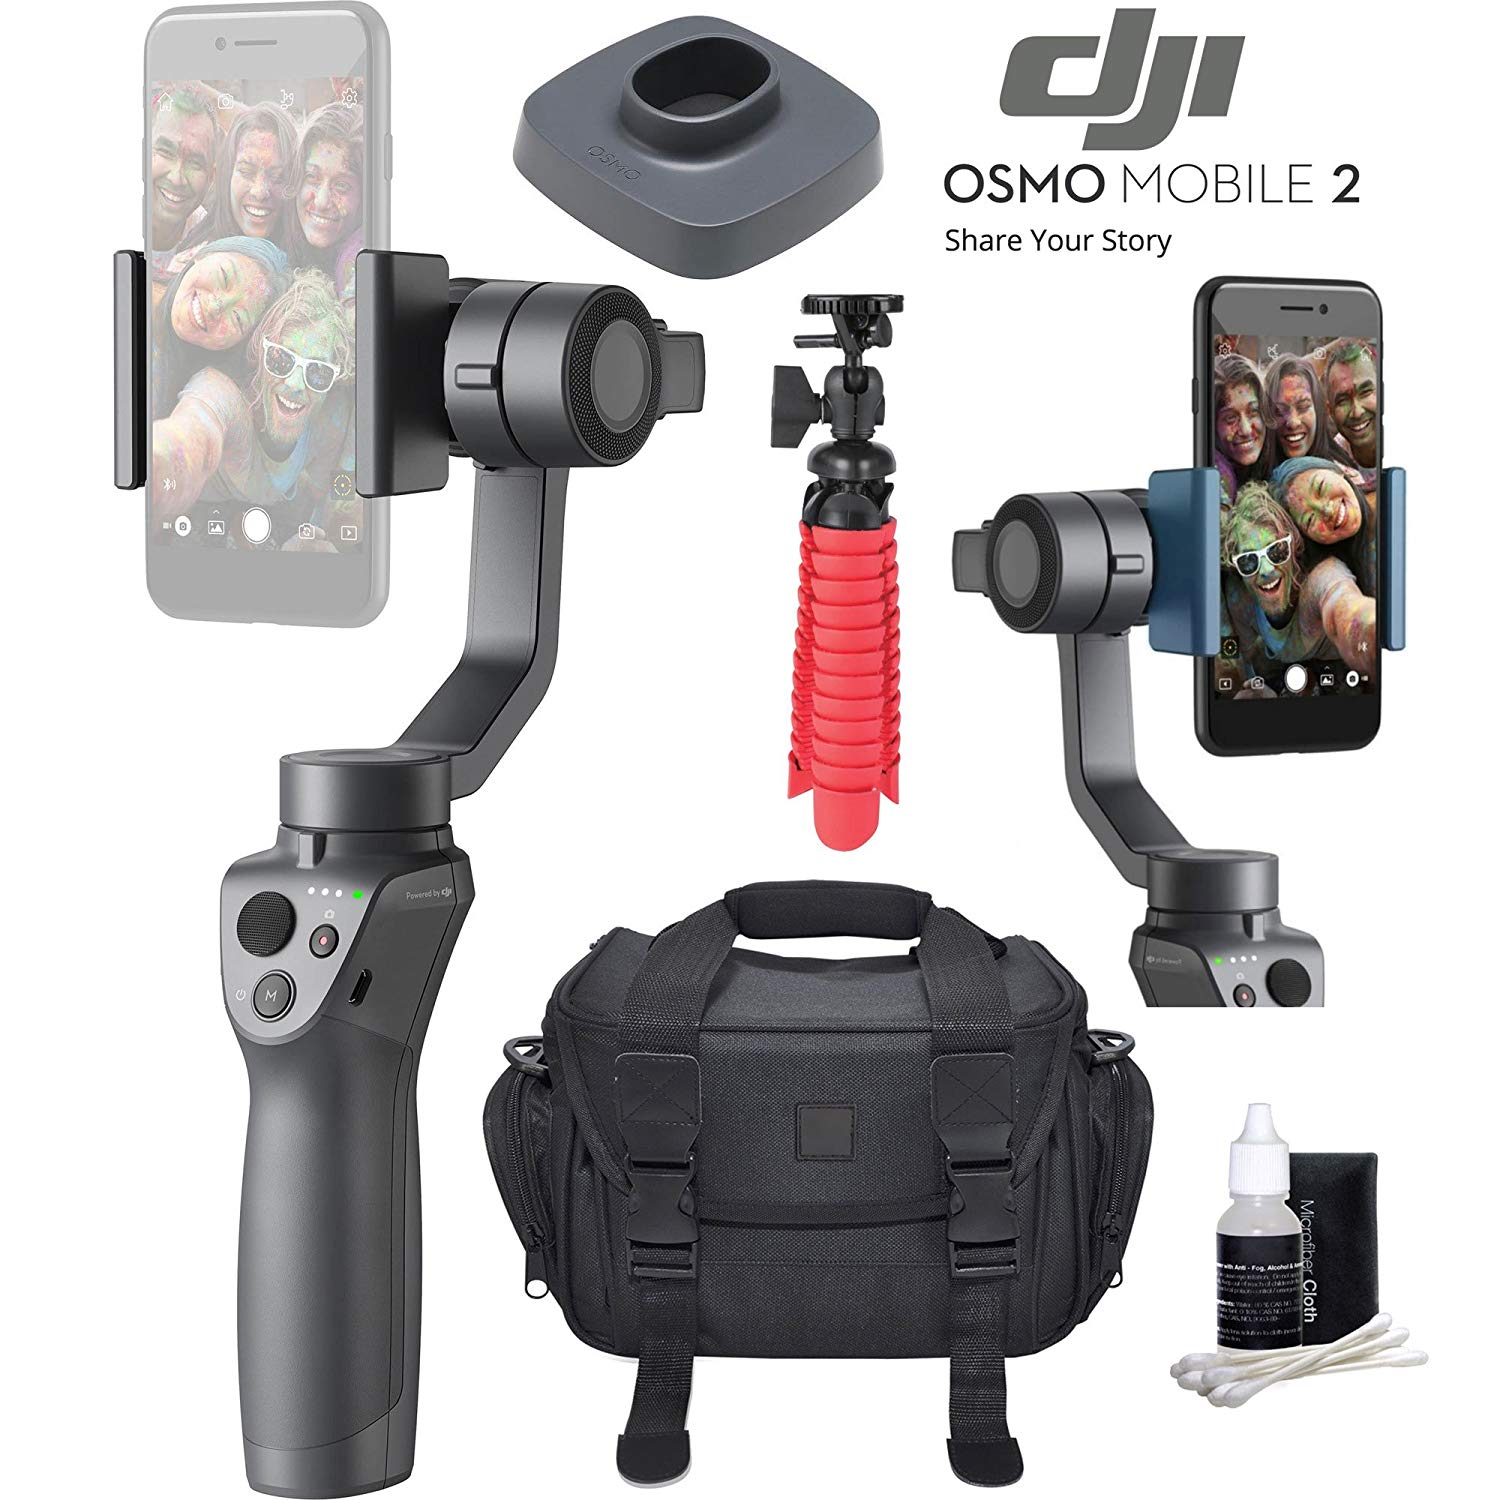 DJI Osmo Mobile 2 Handheld Smartphone Gimbal